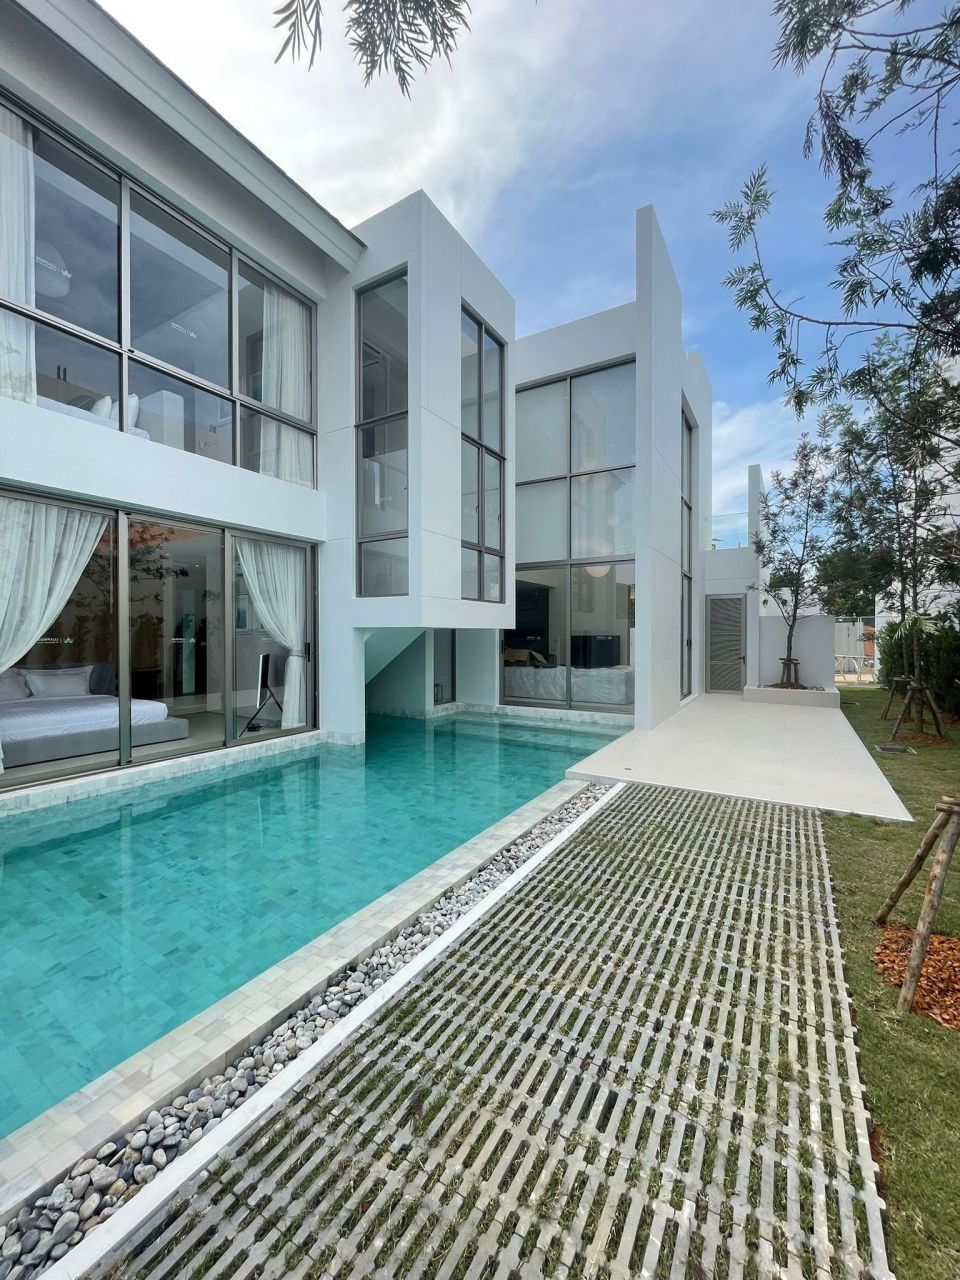 Villa in Insel Phuket, Thailand, 375 m2 - Foto 1